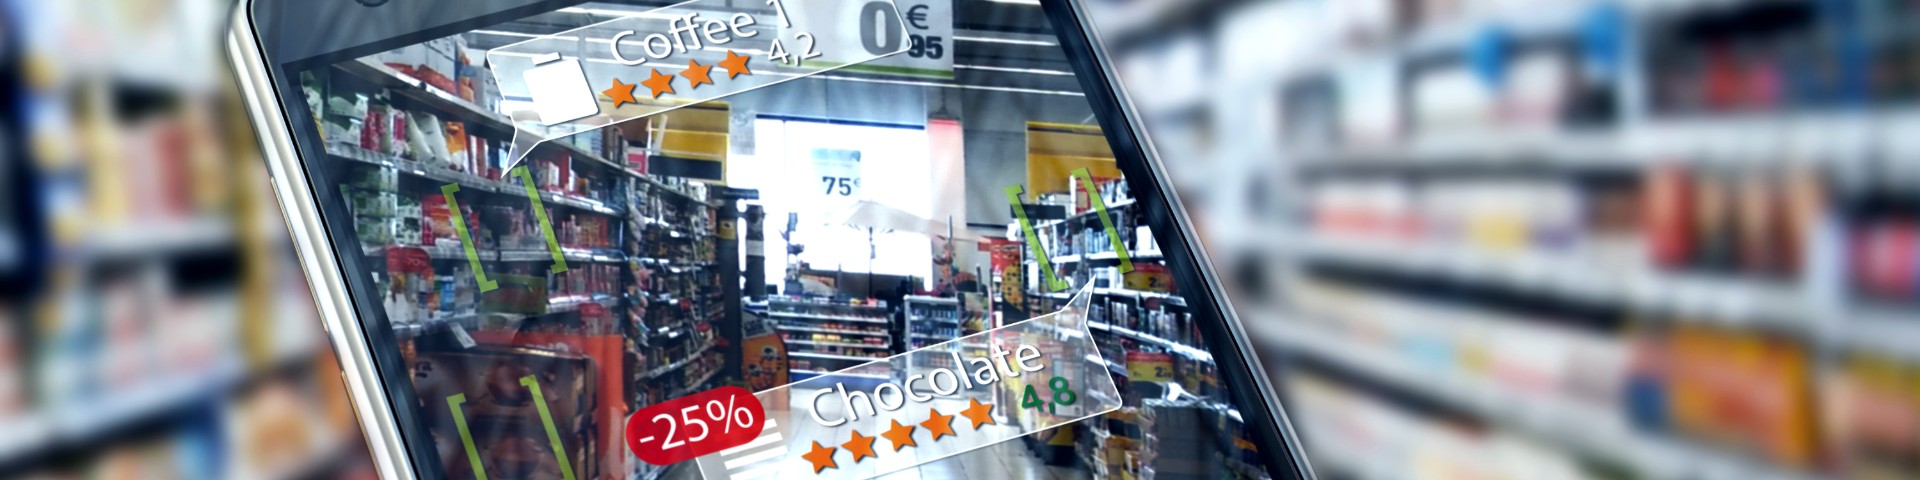 Bildschirm eines Smartphones im Supermarkt in Kameraansicht